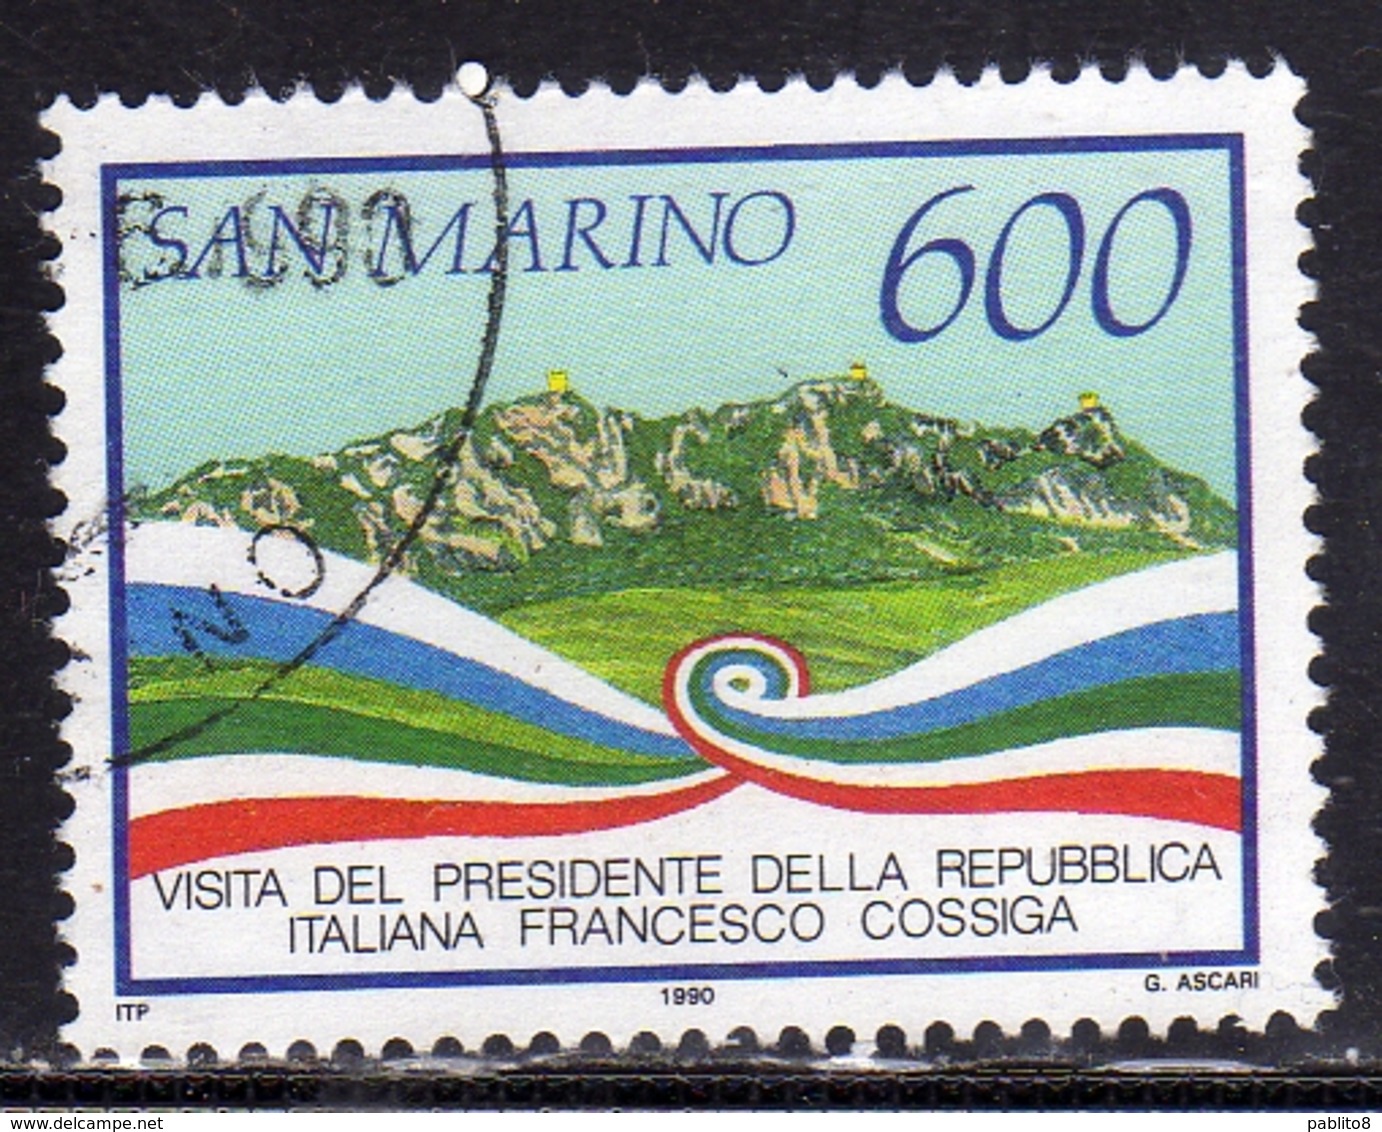 REPUBBLICA DI SAN MARINO 1990 VISITA DEL PRESIDENTE DELLA REPUBBLICA ITALIANA FRANCESCO COSSIGA LIRE 600 USATO USED OBL - Usati